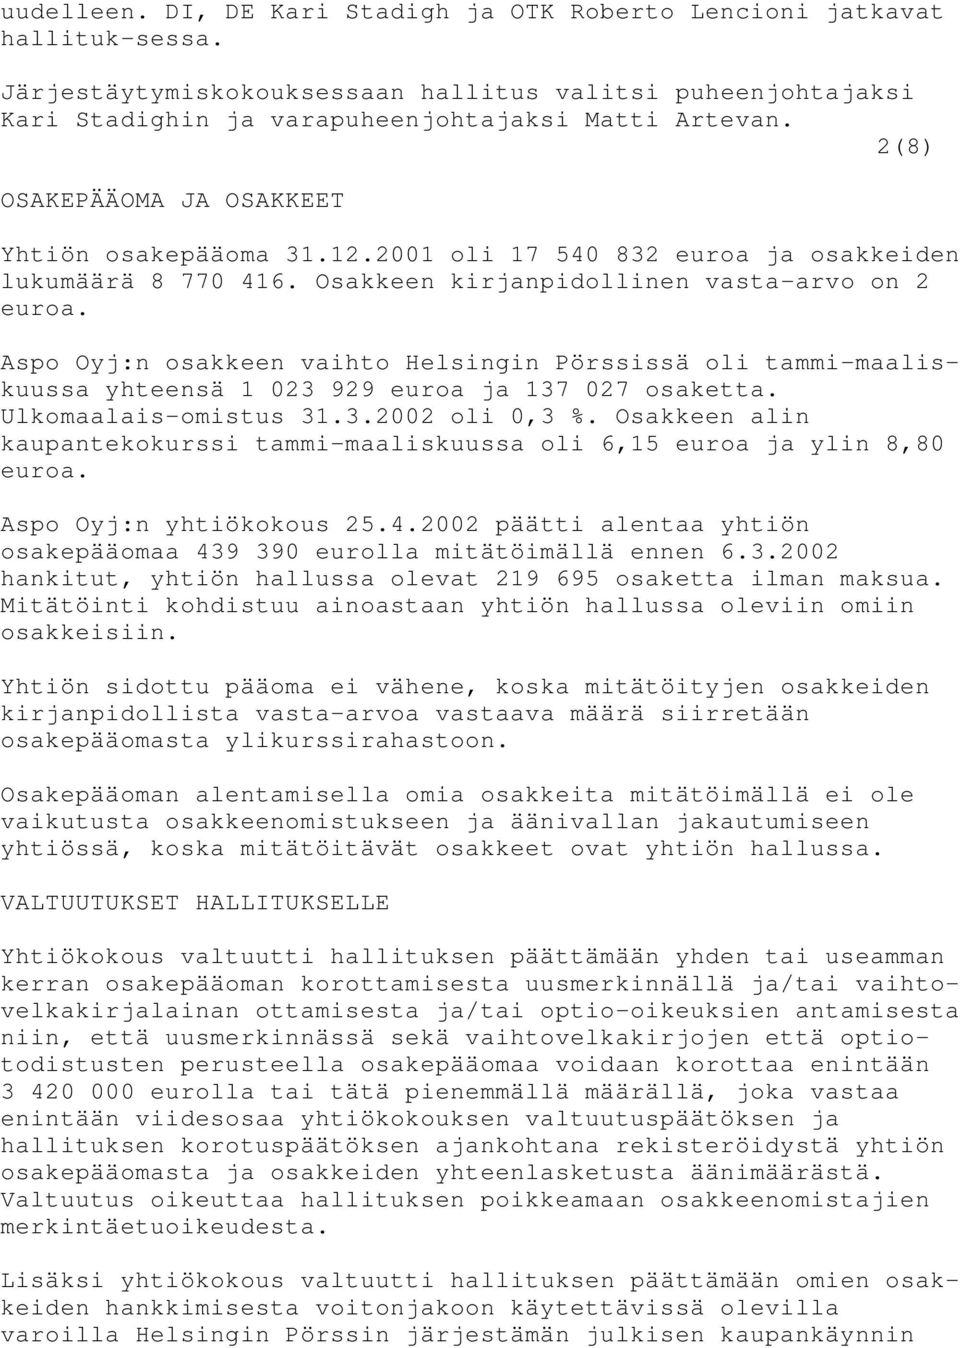 Aspo Oyj:n osakkeen vaihto Helsingin Pörssissä oli tammi-maaliskuussa yhteensä 1 023 929 euroa ja 137 027 osaketta. Ulkomaalais-omistus 31.3.2002 oli 0,3 %.